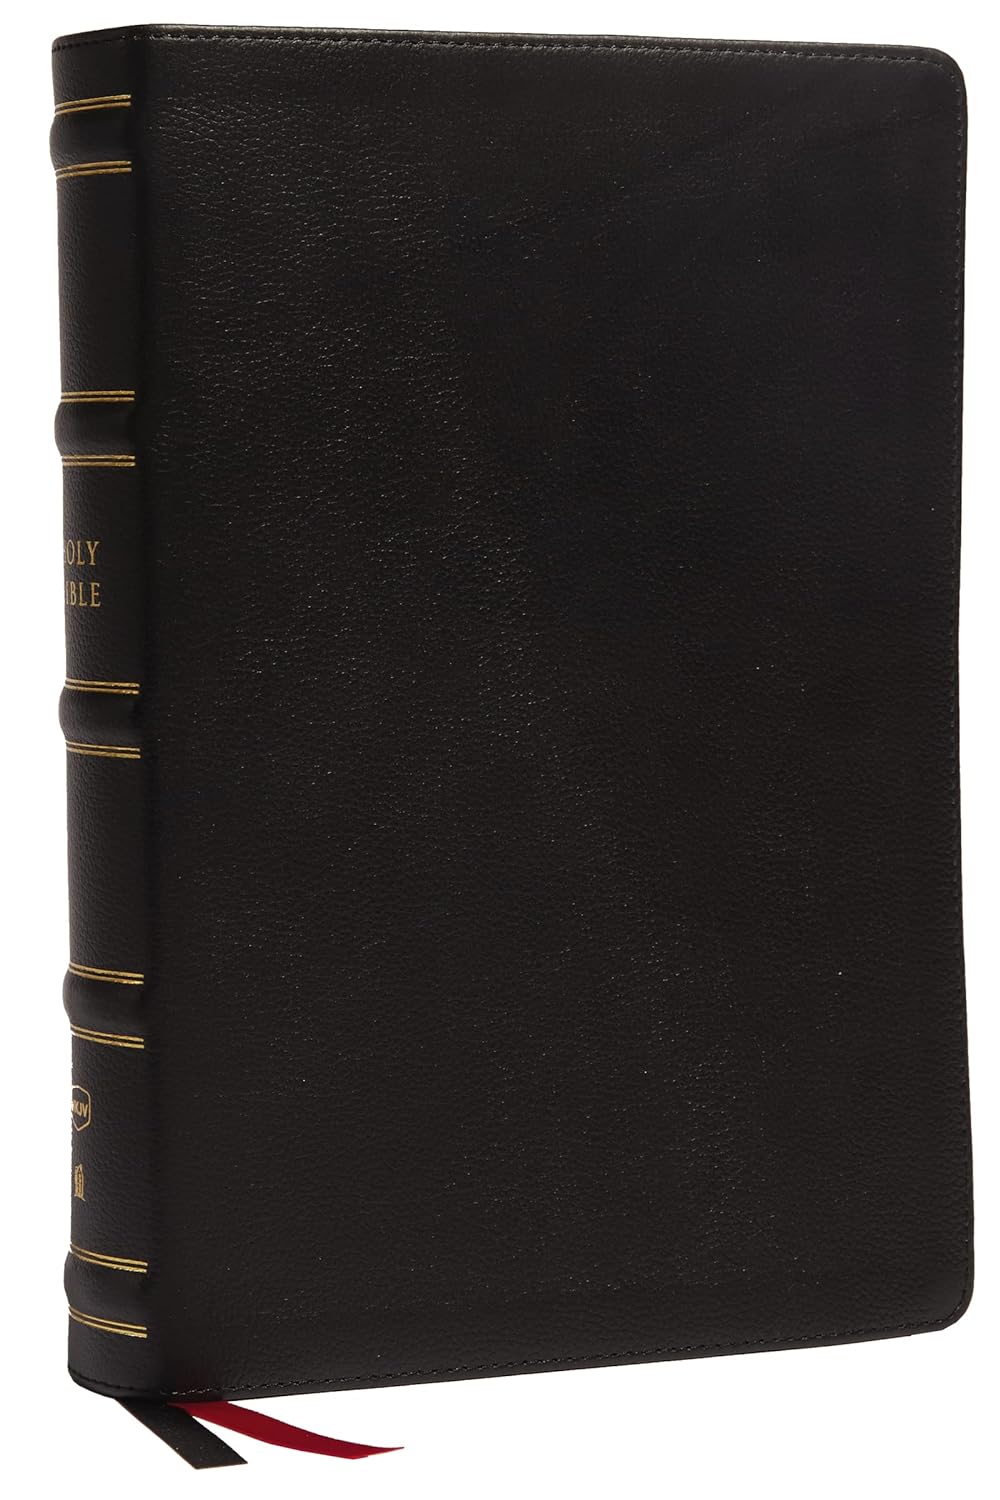 NKJV, Single-Column Wide-Margin Reference Bible, New King James Version